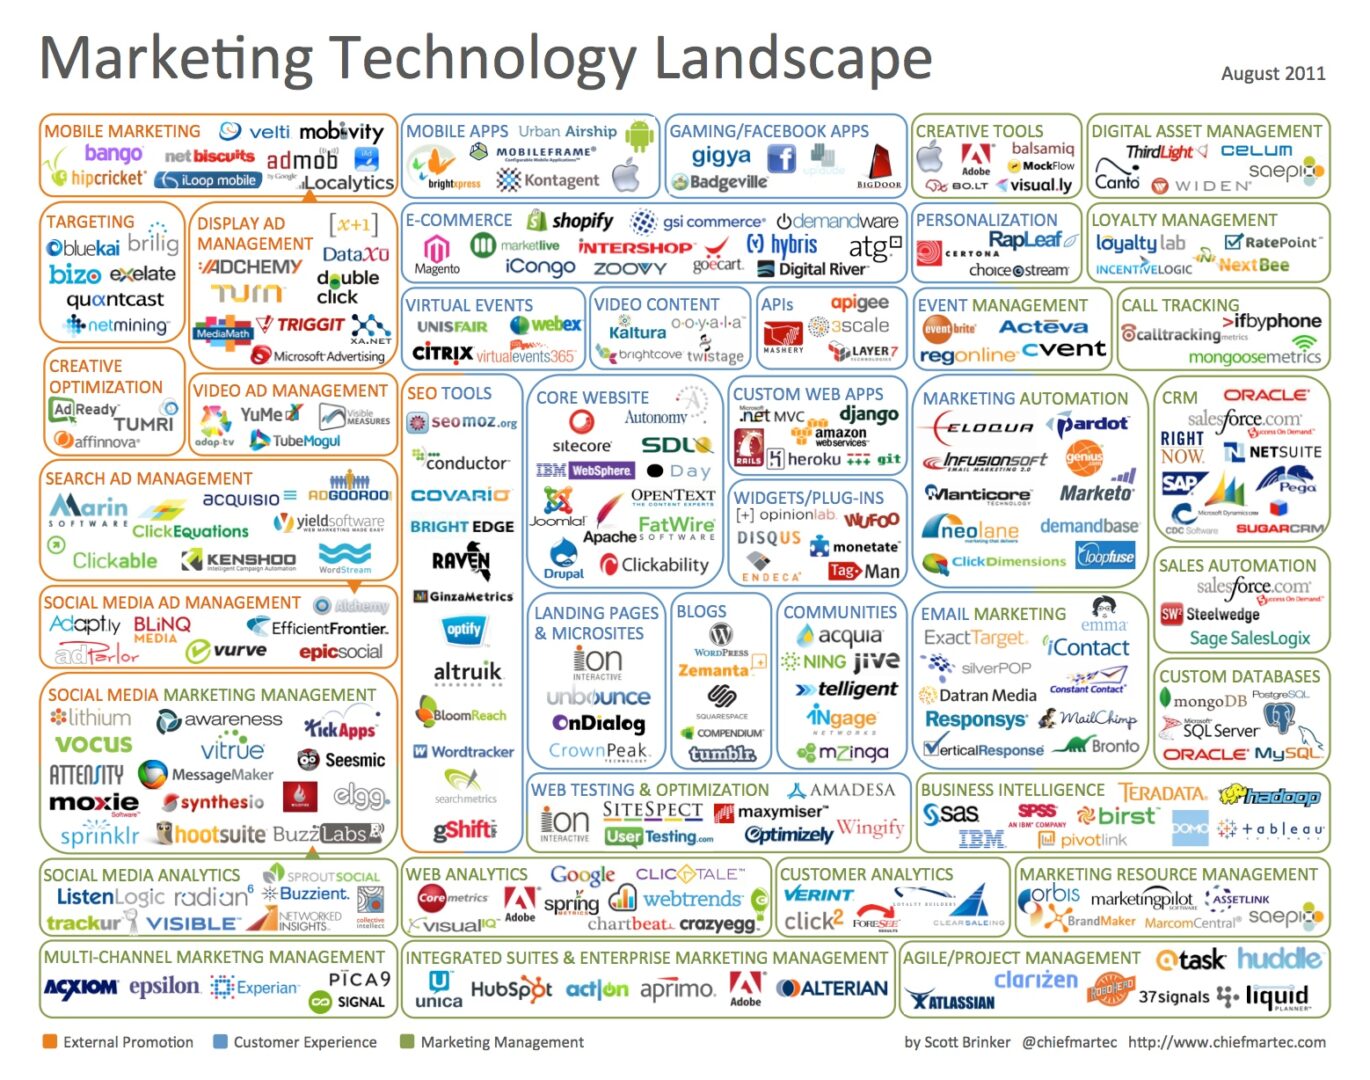 Die Marketing Technologie Landschaft im August 2011 mit rund 100 Tools - Grafik von Scott Brinker (@chiefmartec)